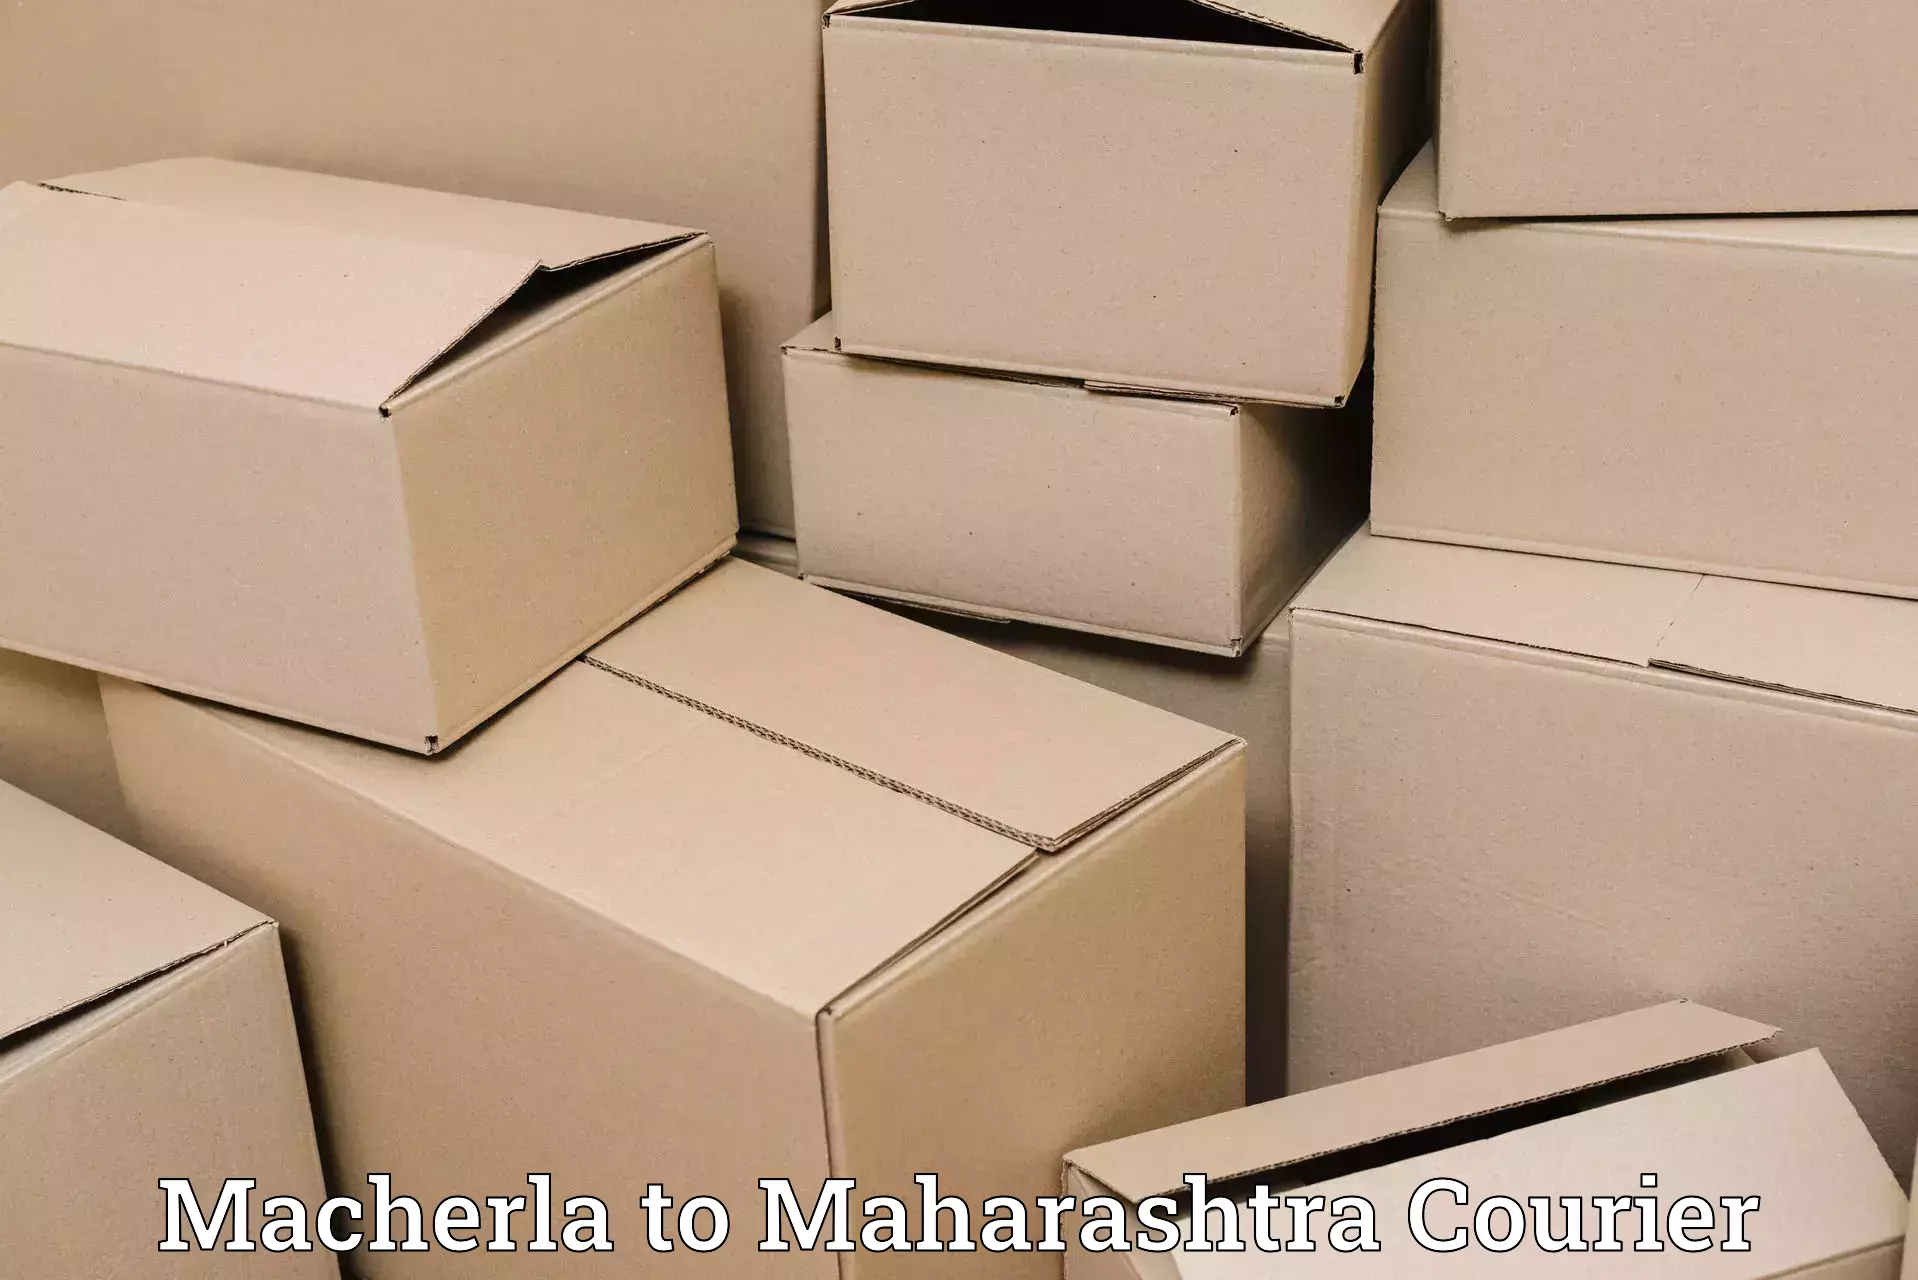 Express mail service Macherla to Symbiosis International Pune